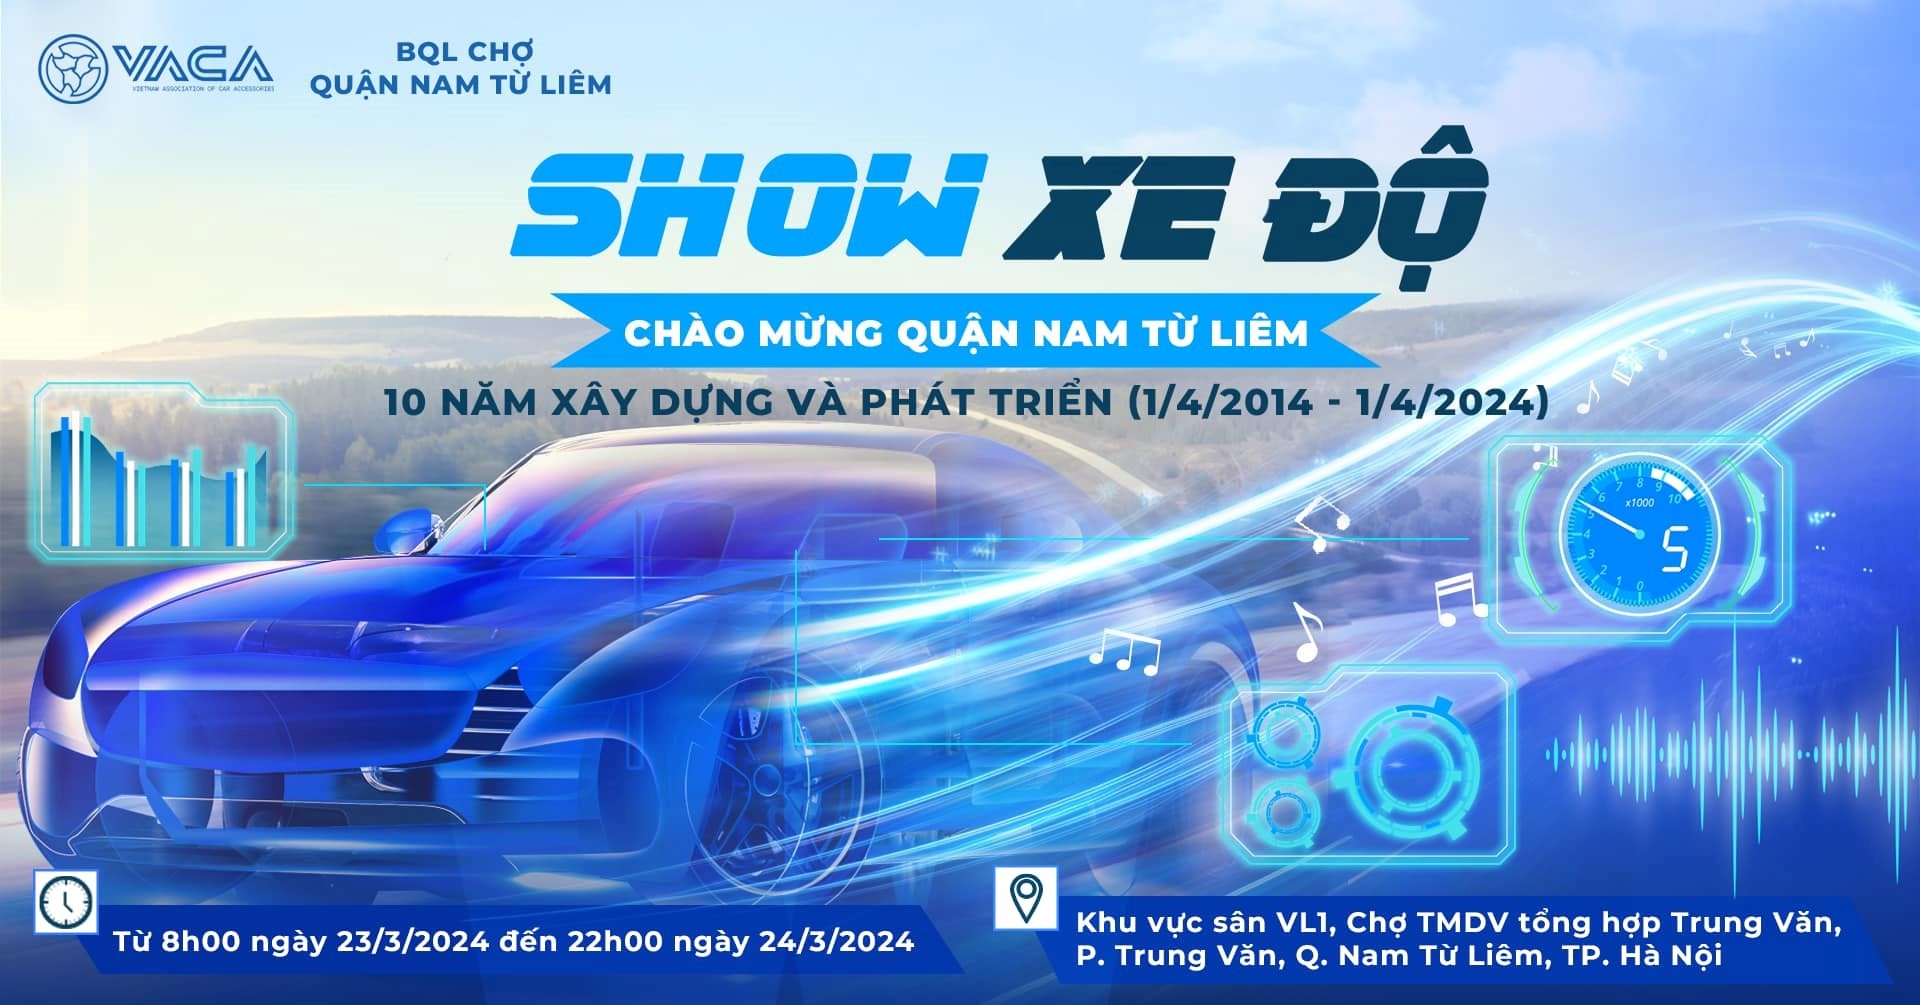 Đi xem Show Xe Độ tại quận Nam Từ Liêm – Hà Nội